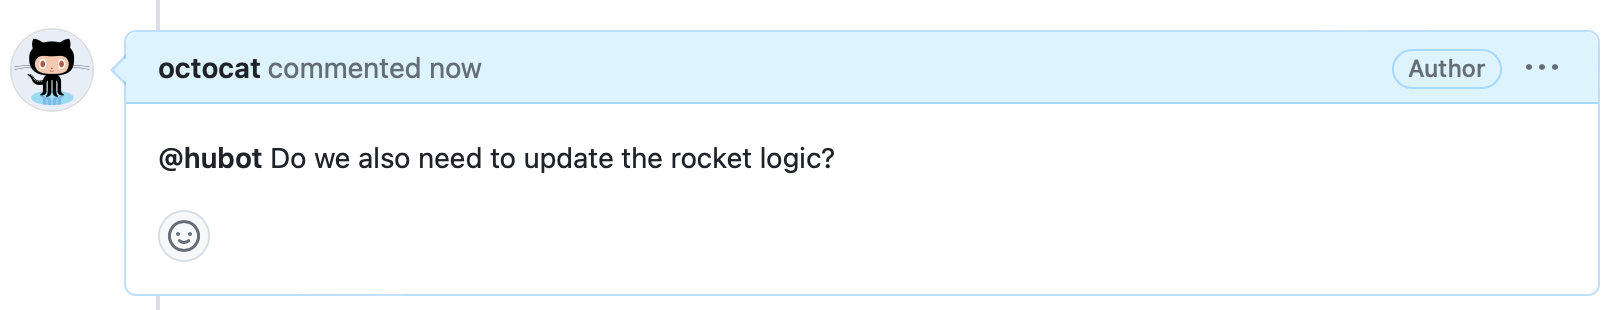 Captura de pantalla de un comentario de incidencia. El encabezado dice "octocat acaba de comentar" y el cuerpo dice "@hubot También es necesario actualizar la lógica del cohete?"